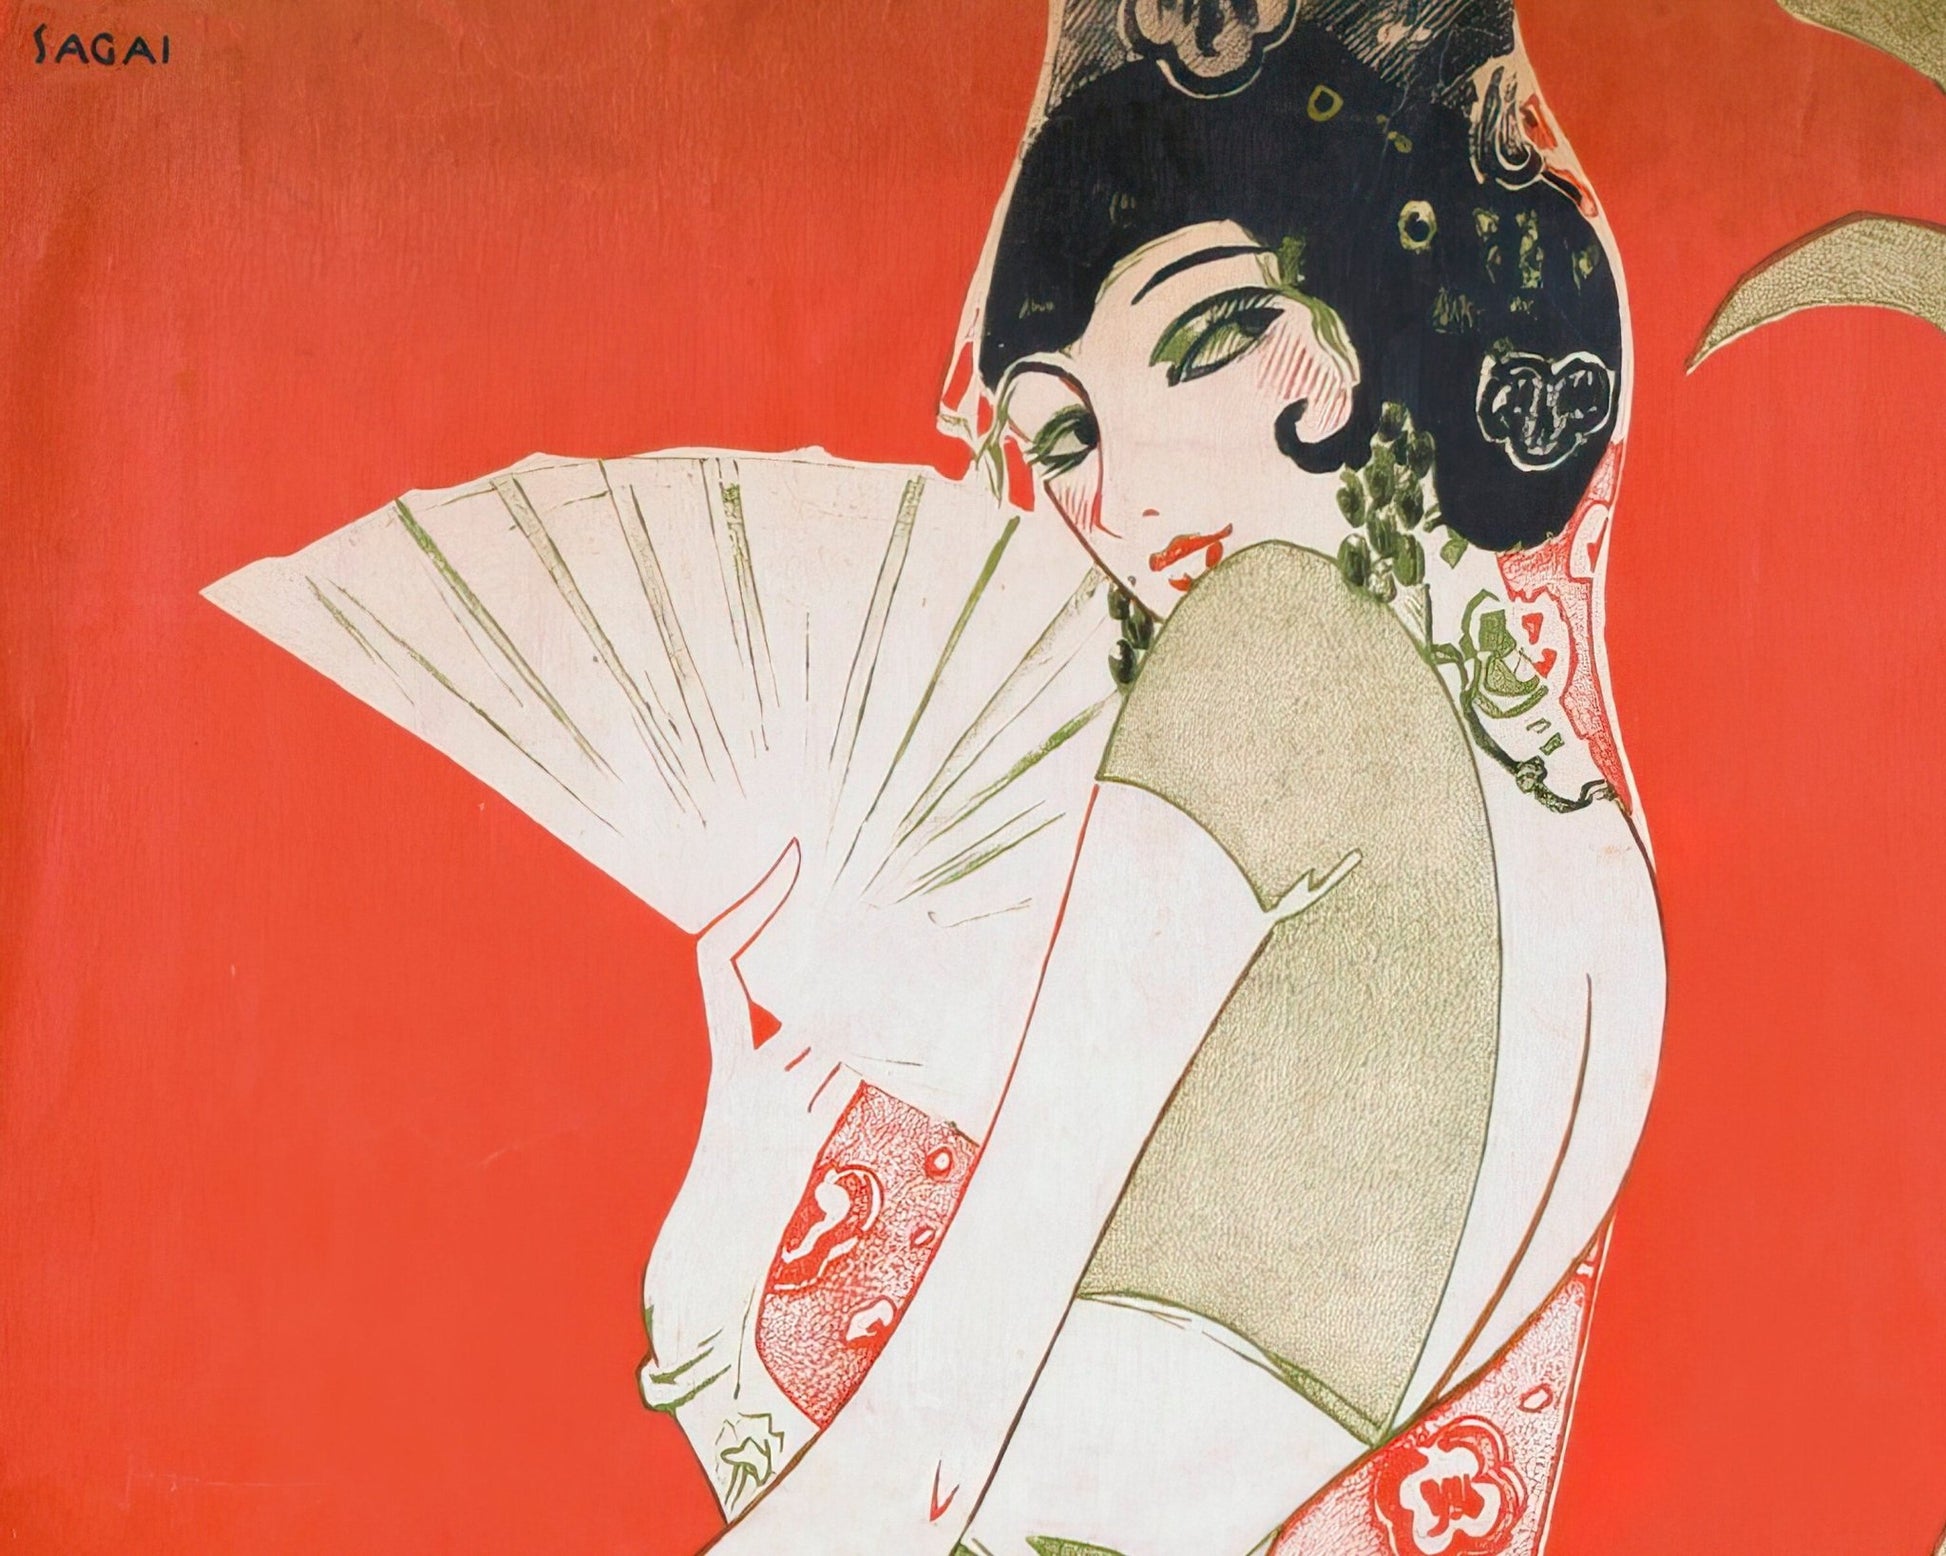 Vintage Sheet Music Cover "Donna Klára" (c.1928) - Mabon Gallery